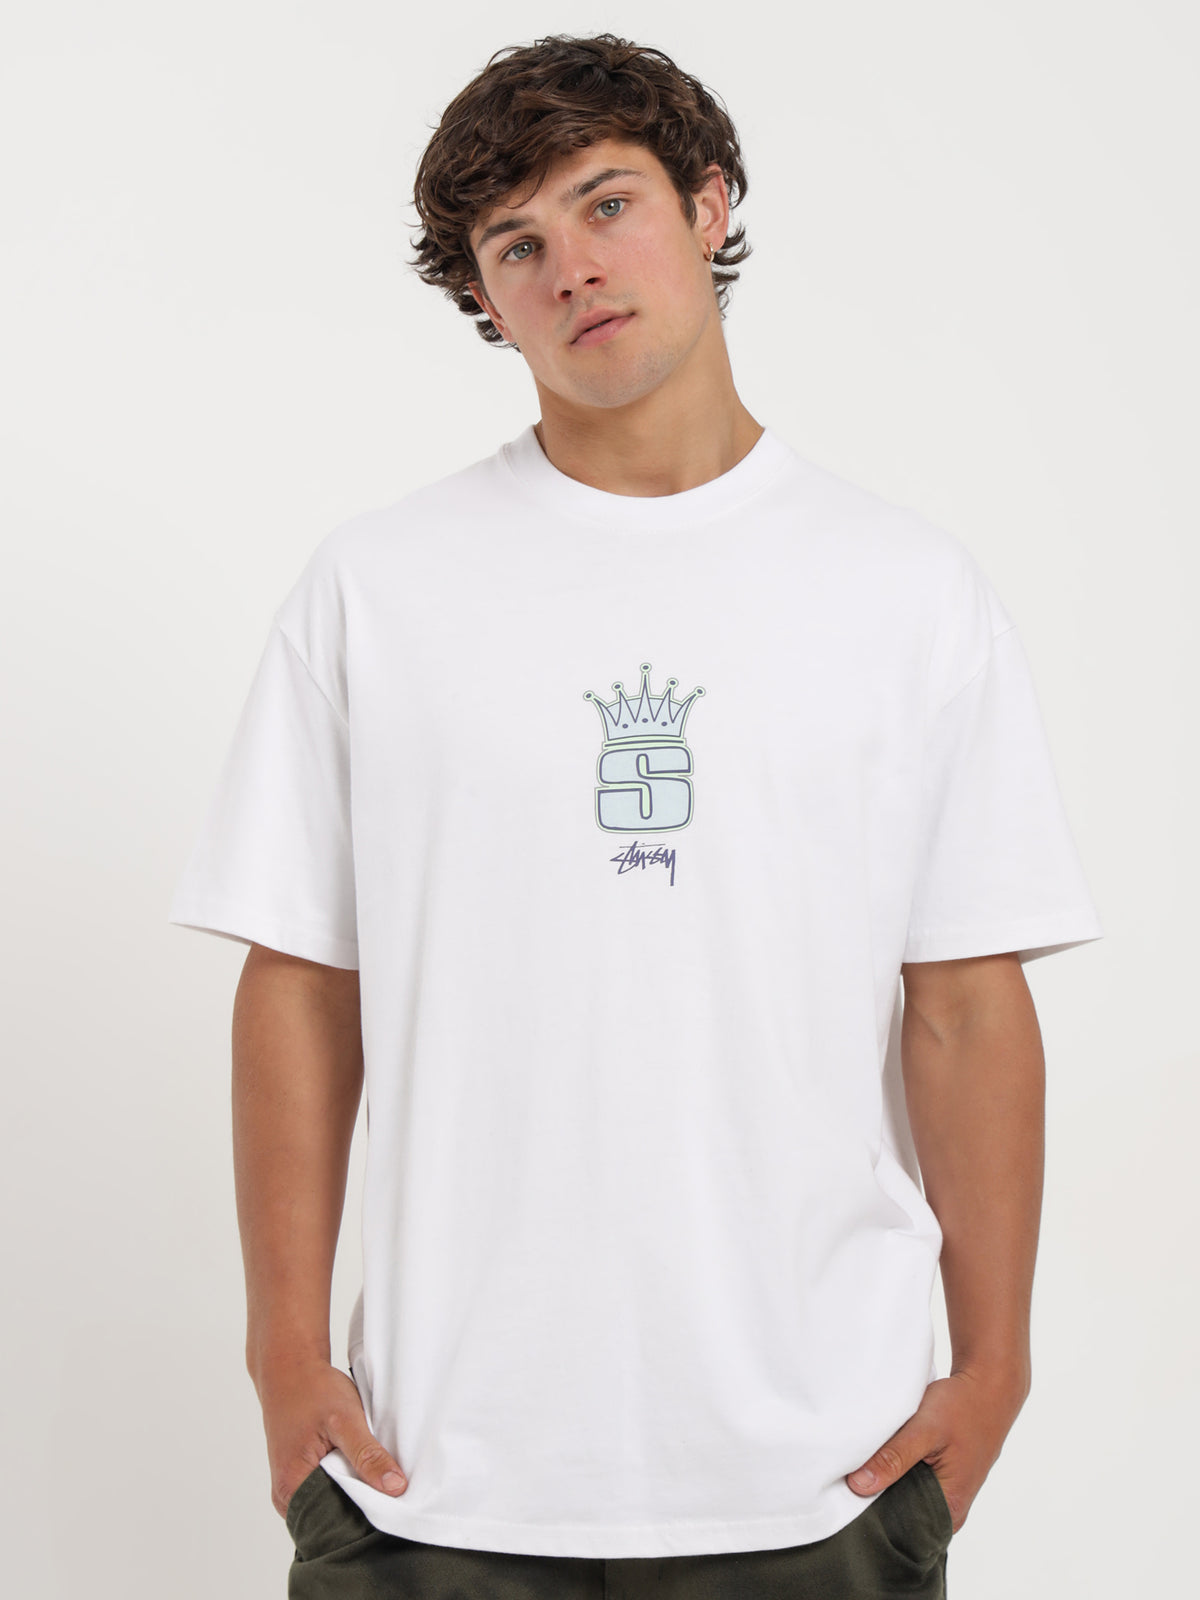 King S HW T-Shirt in White